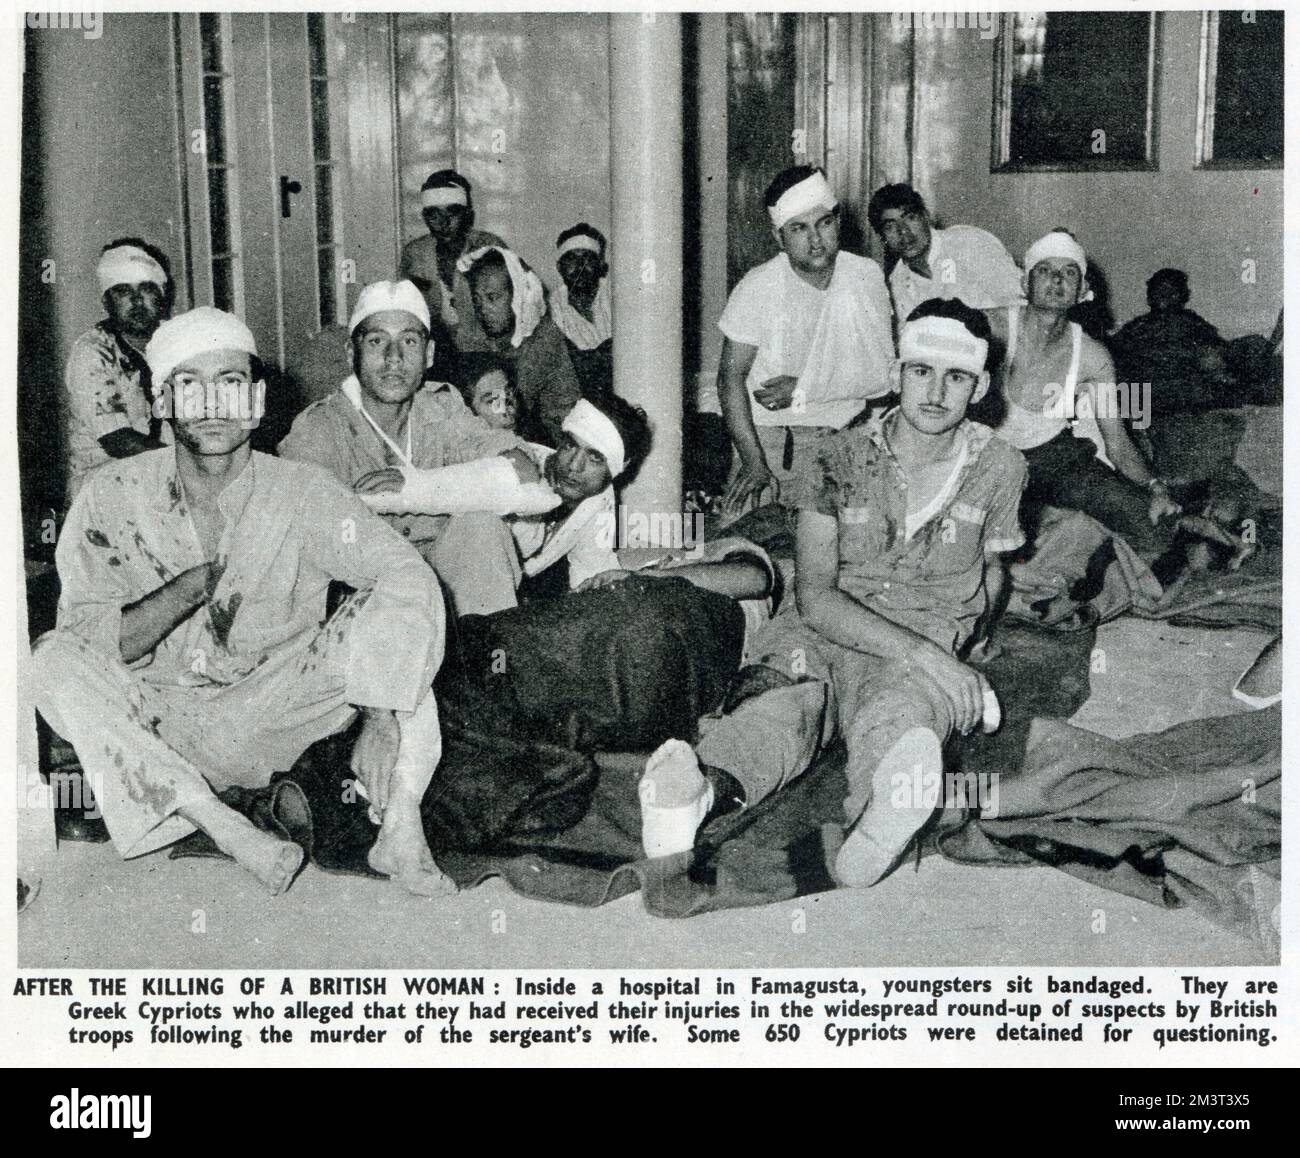 Junge zypriotische Männer mit Verbandsköpfen in einem Krankenhaus in Famagusta, die behaupteten, nach einer weitverbreiteten Verhaftung von 650 Verdächtigen durch britische Truppen verletzt worden zu sein, nachdem die Frau einer Feldwebel (Frau D J Cutliffe) am 3. Oktober 1958 ermordet wurde Stockfoto